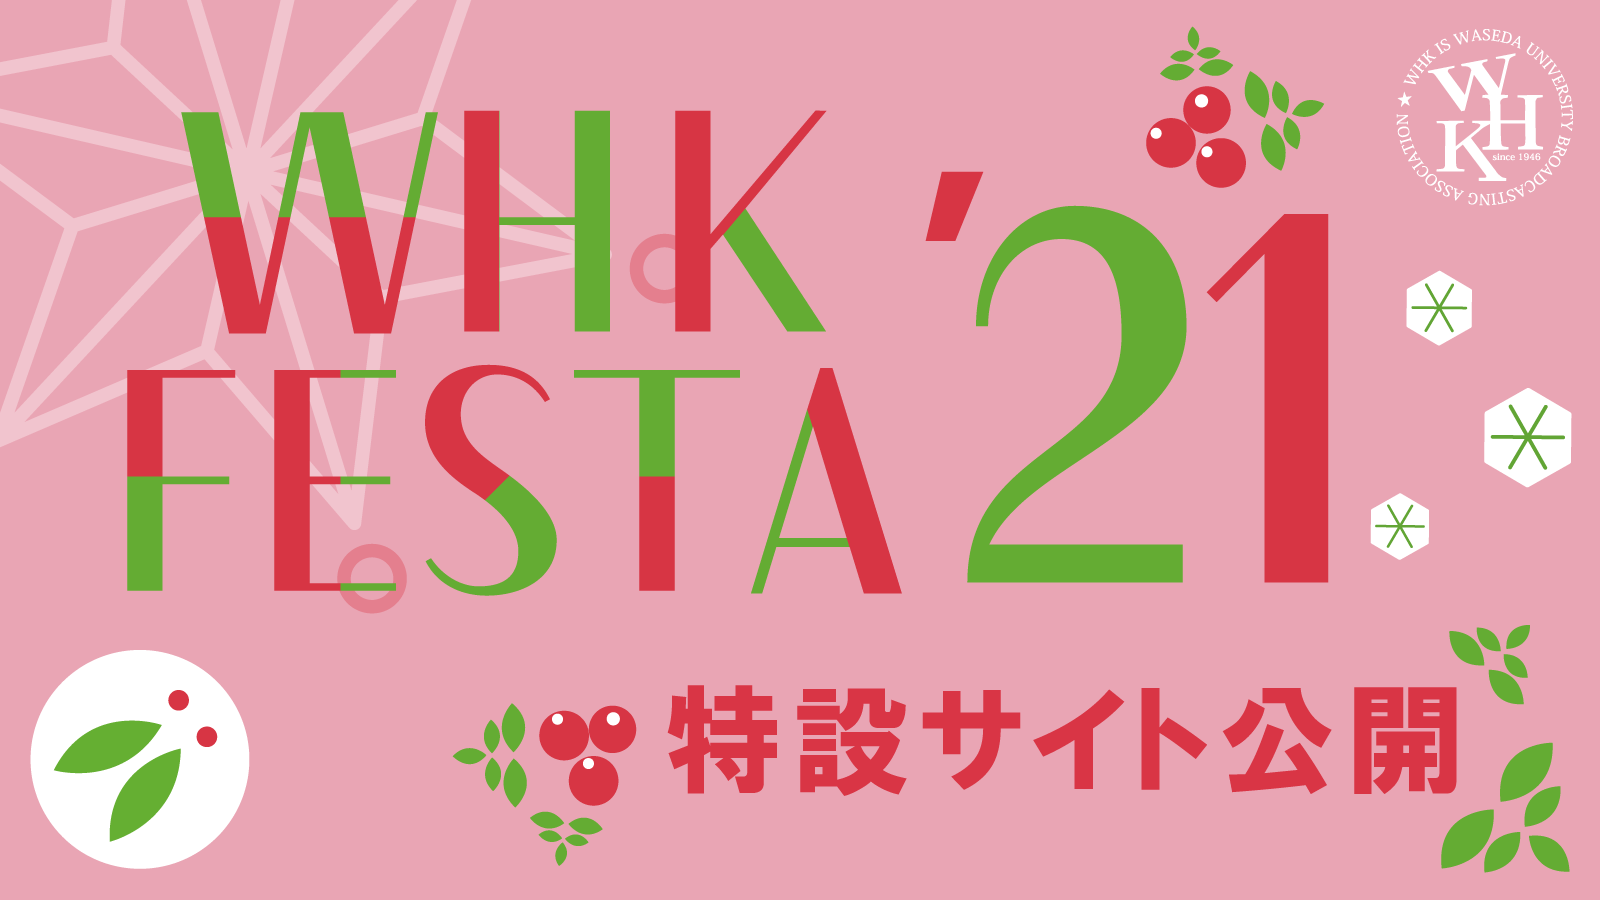 WHK FESTA '21 特設サイト